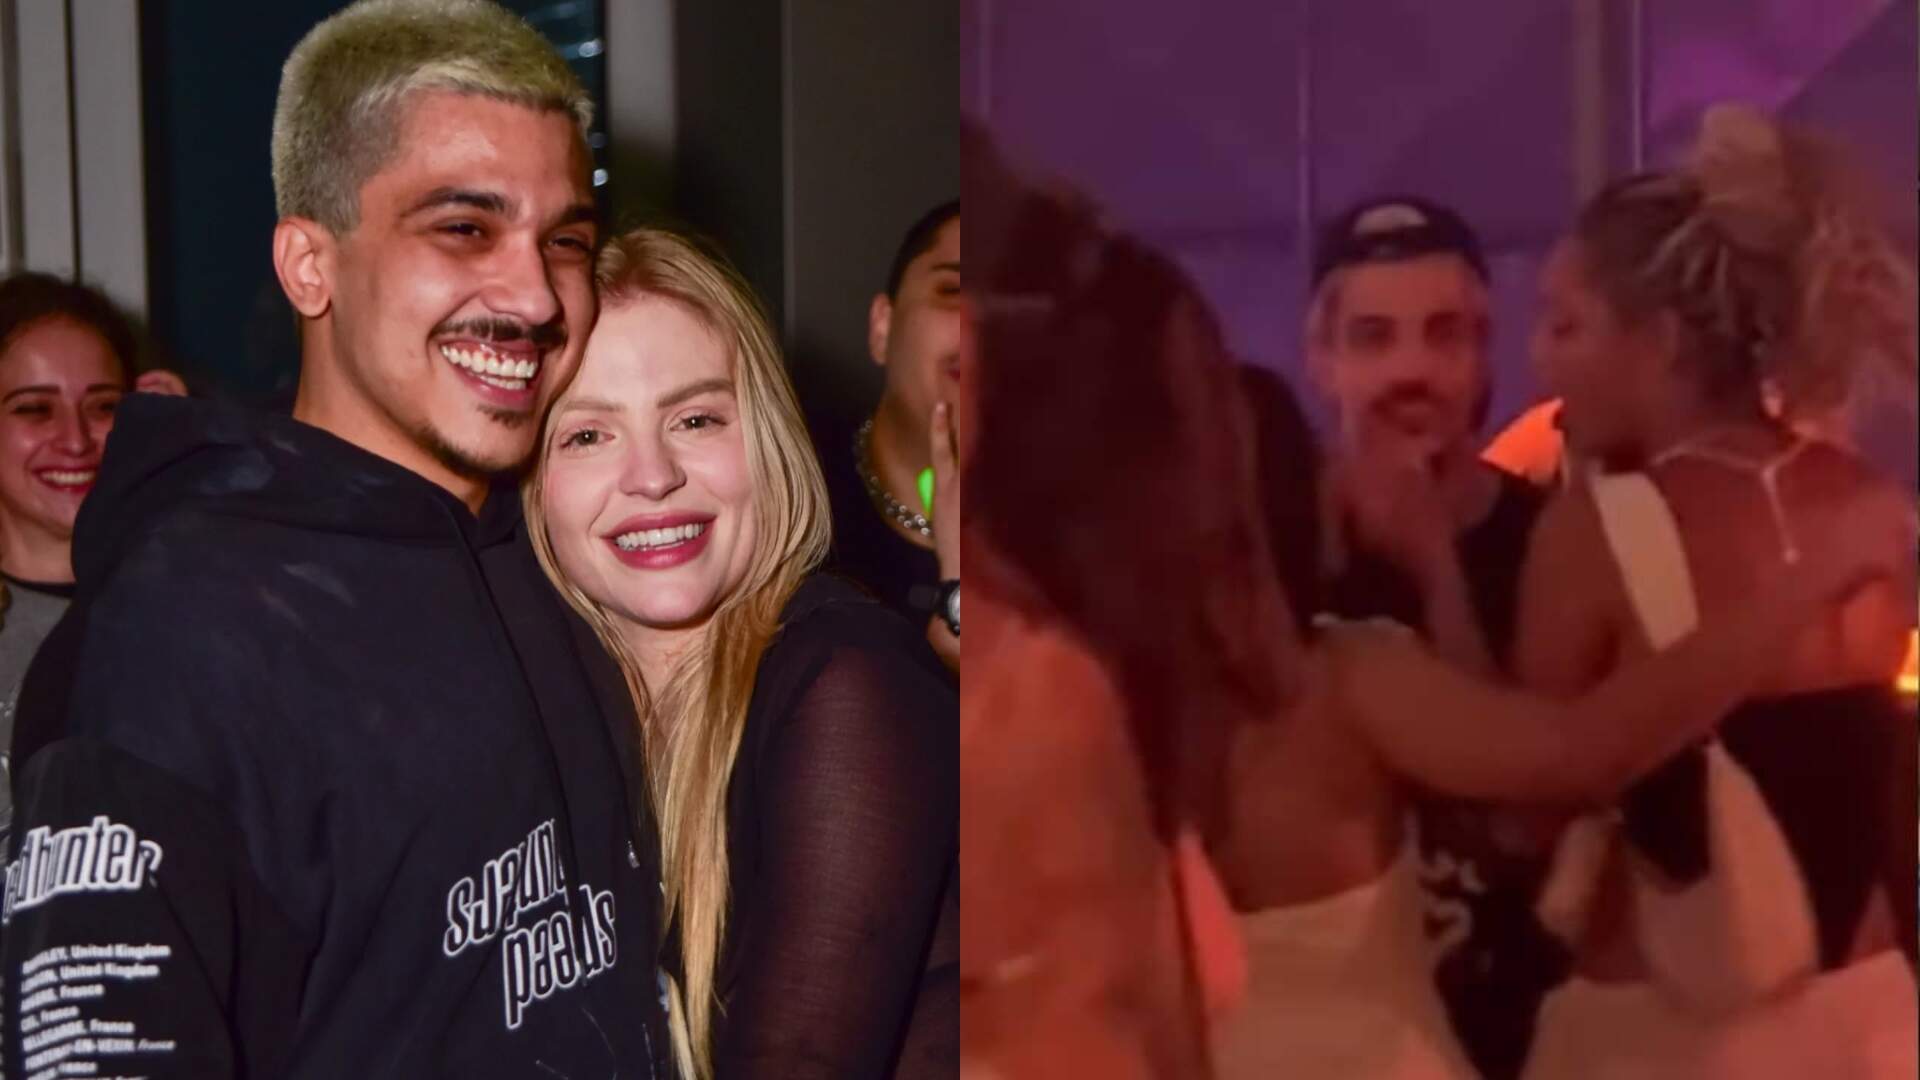 Vídeo de Chico Moedas beijando outra mulher na balada ao som de Luísa Sonza viraliza na web